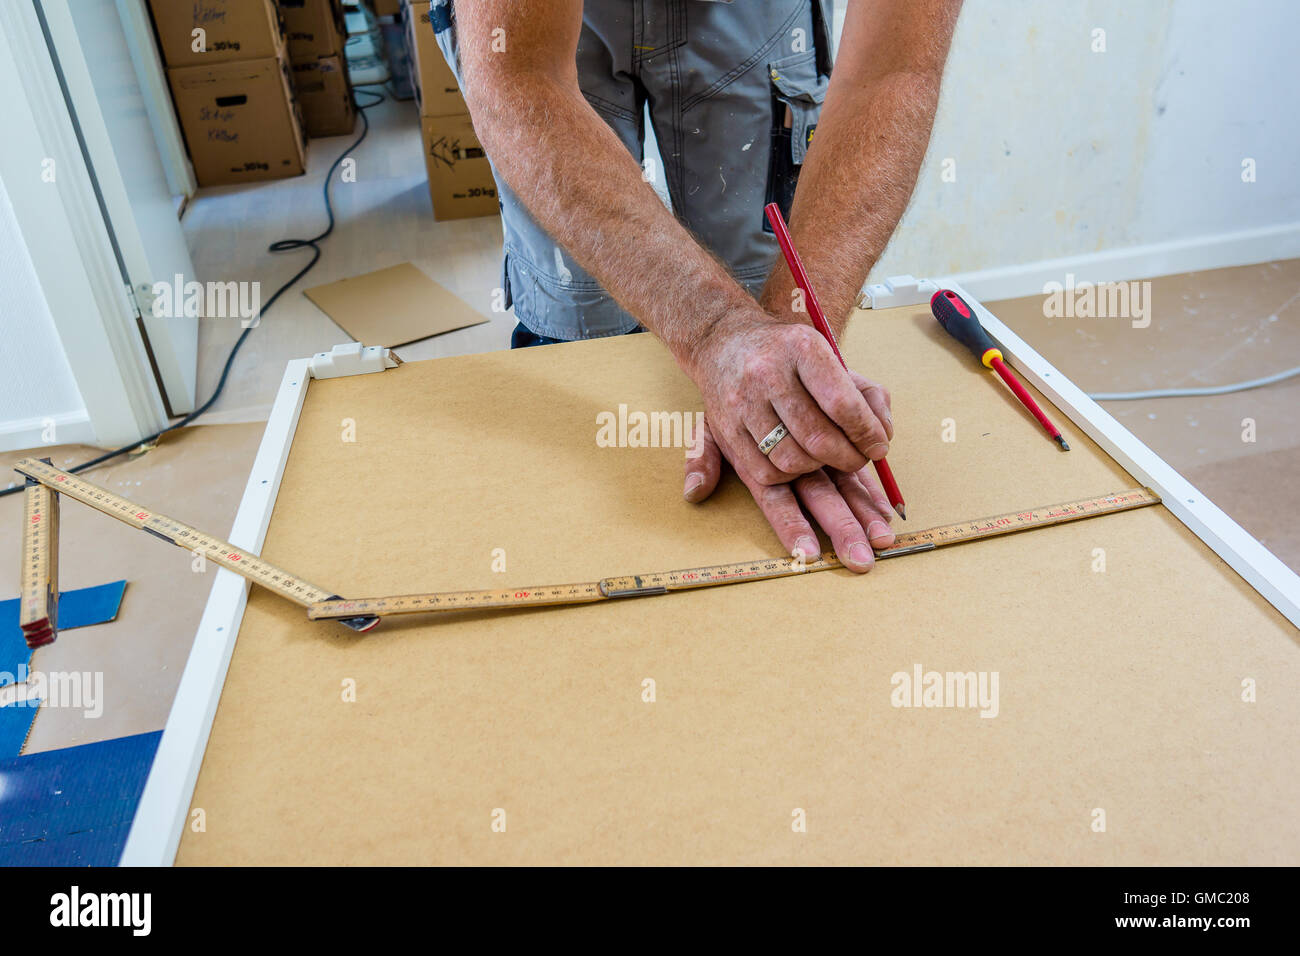 Cocina IKEA montaje carpintero Foto de stock